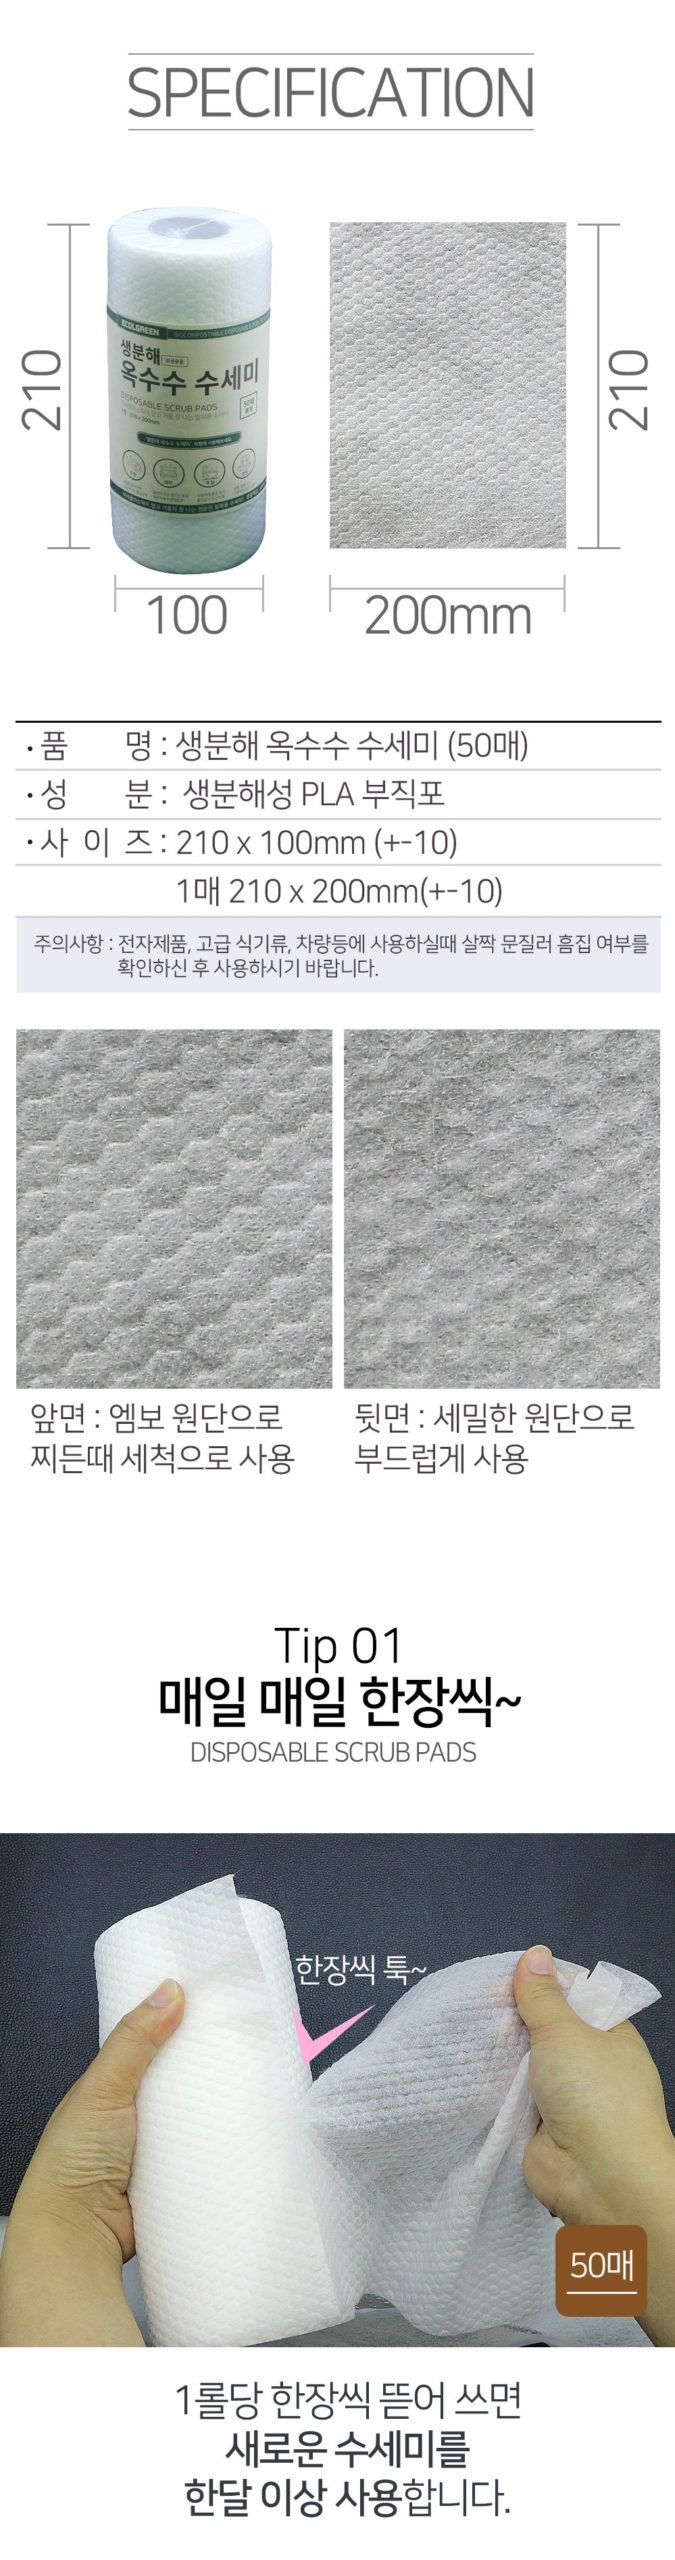 韓國食品-[에콜그린] 생분해 옥수수 수세미 50pcs